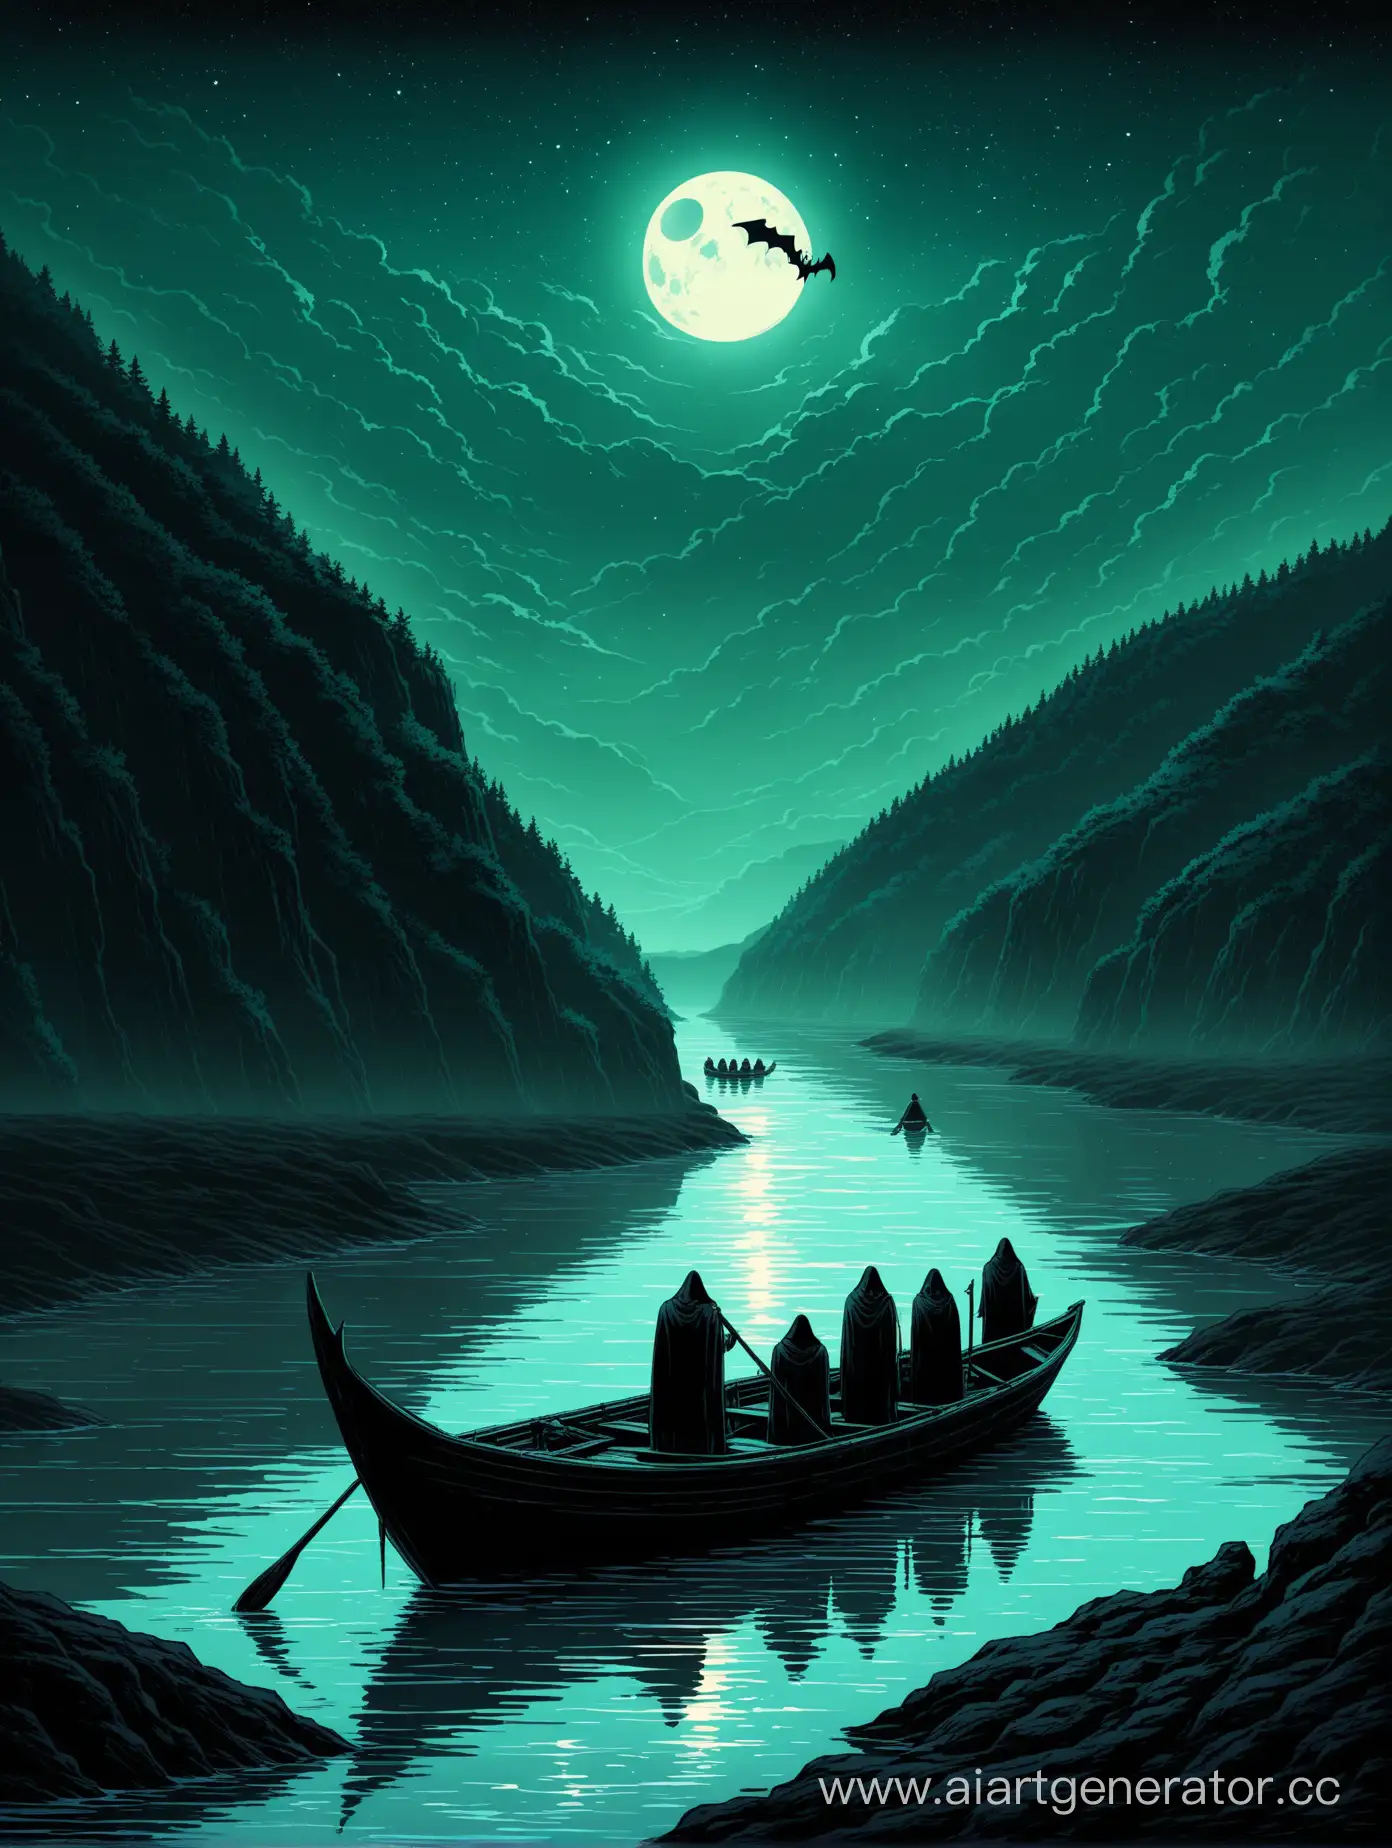 Предместья реки Стикс. Черная вода. Лодка с хароном. Каменистый берег. Пятеро человек в лодке. 